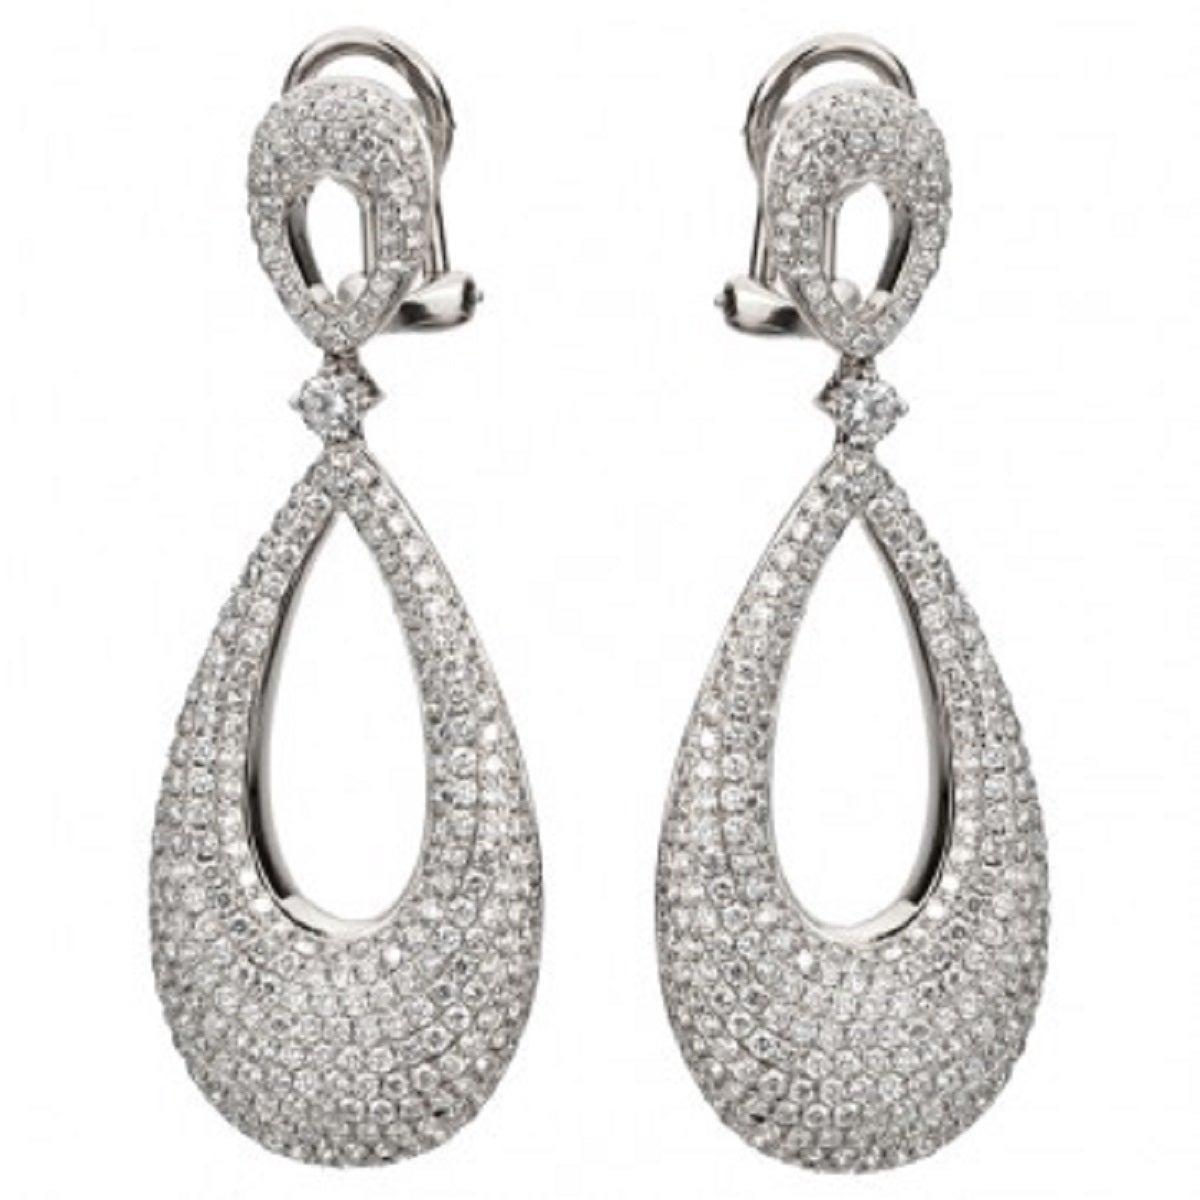 2.90 Carat Diamond Basket Dangle Earrings